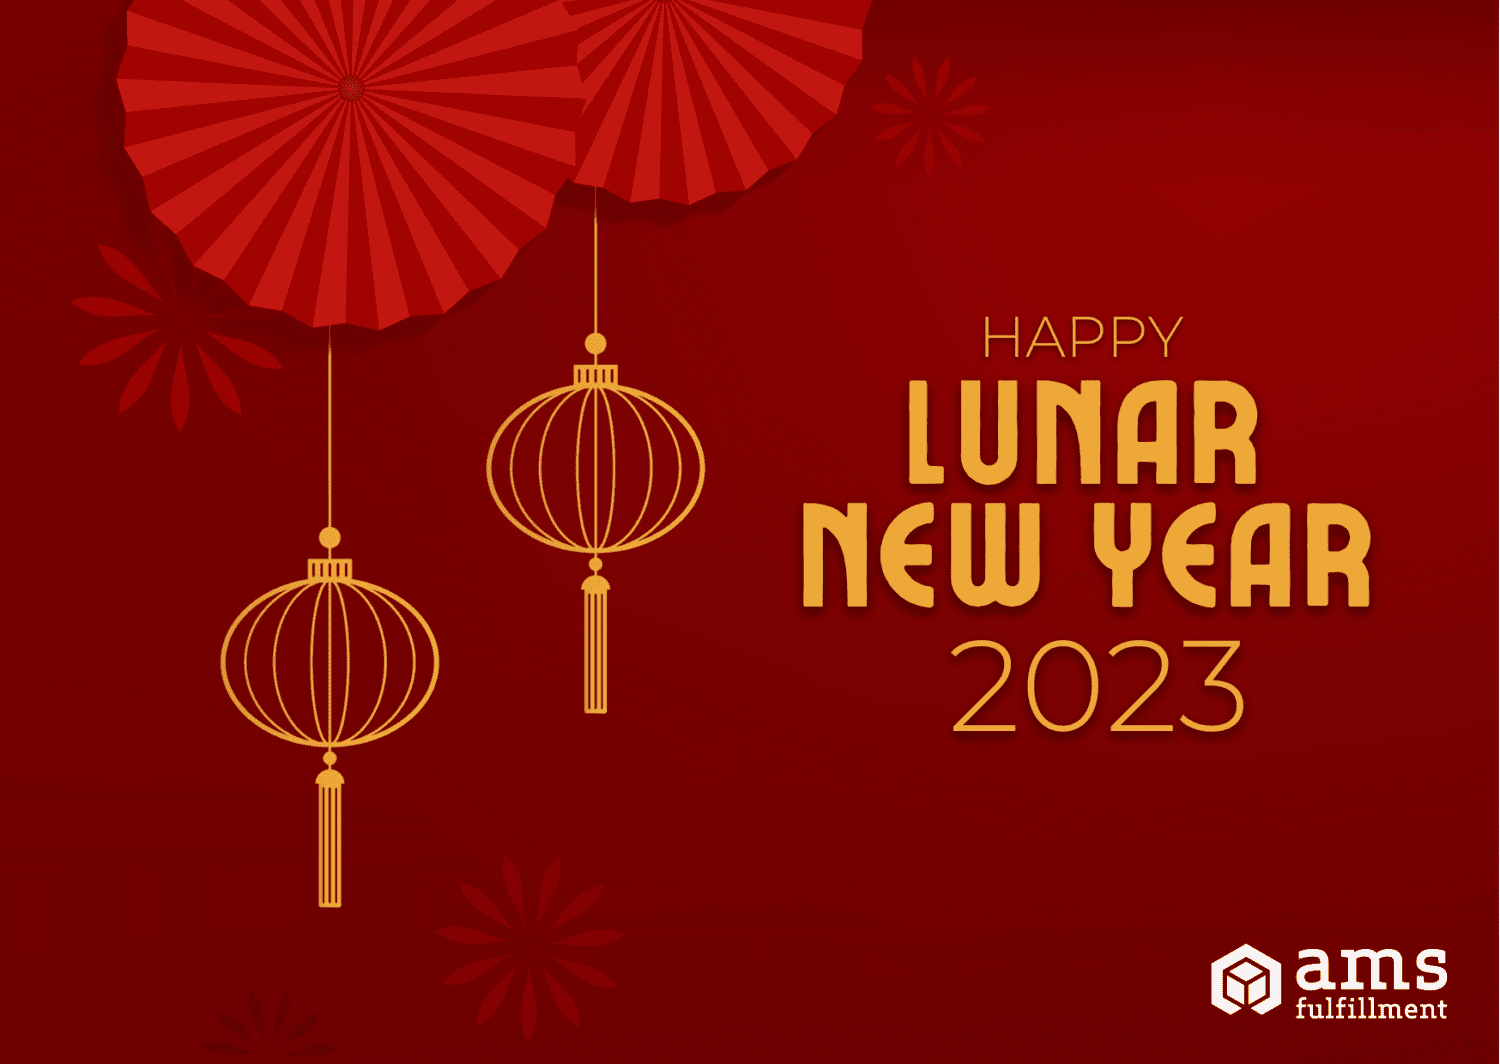 Lunar New Year 2023 | AMS Fulfillment